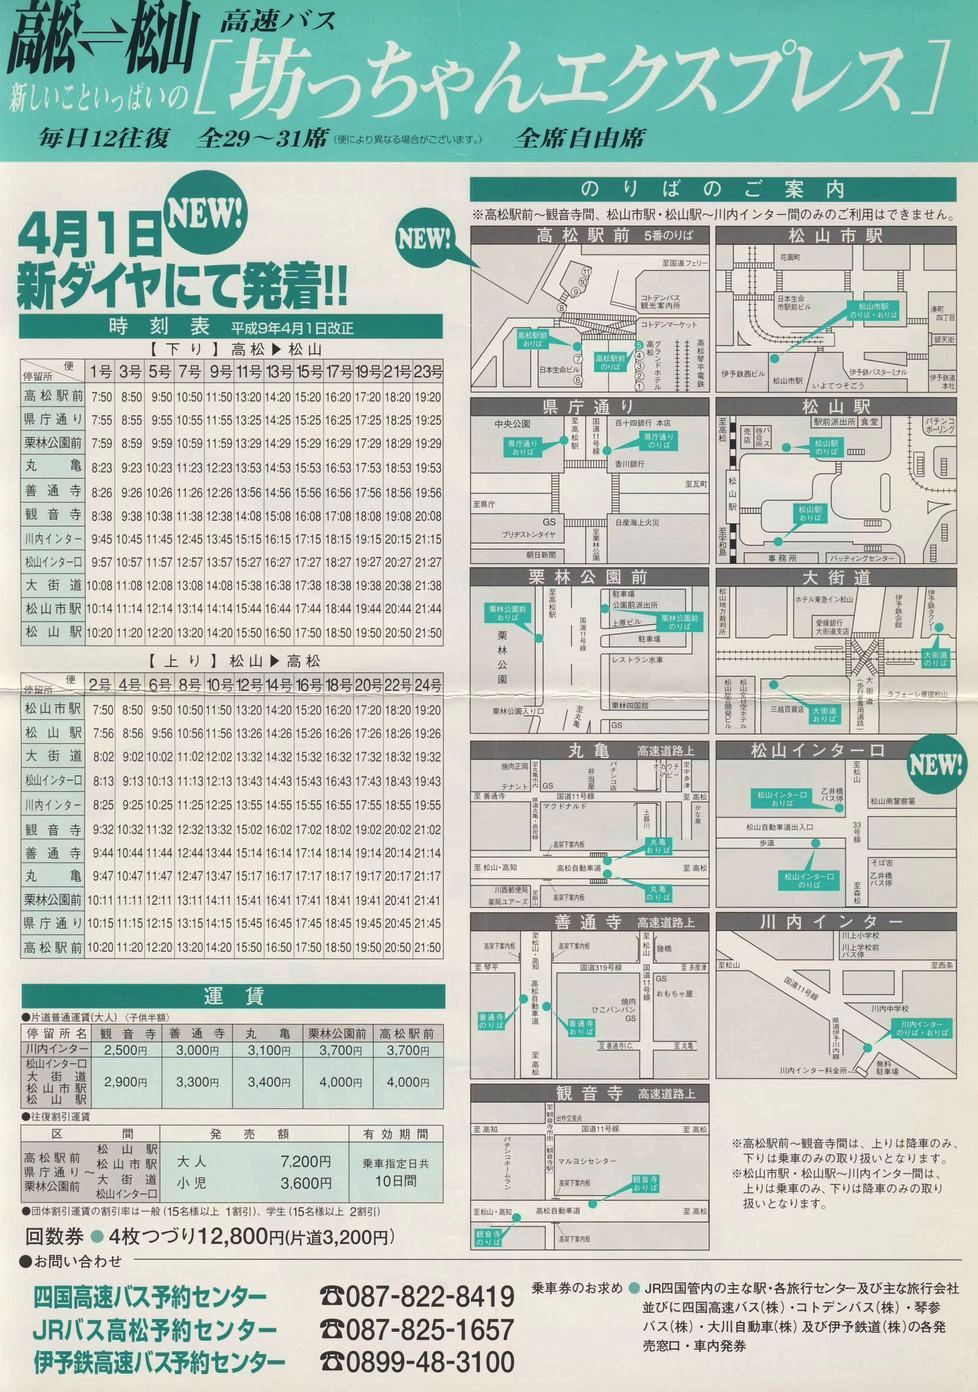 1997-04-01改正_伊予鉄道・四国高速バス・ＪＲ四国バス_坊ちゃんエクスプレスチラシ裏面